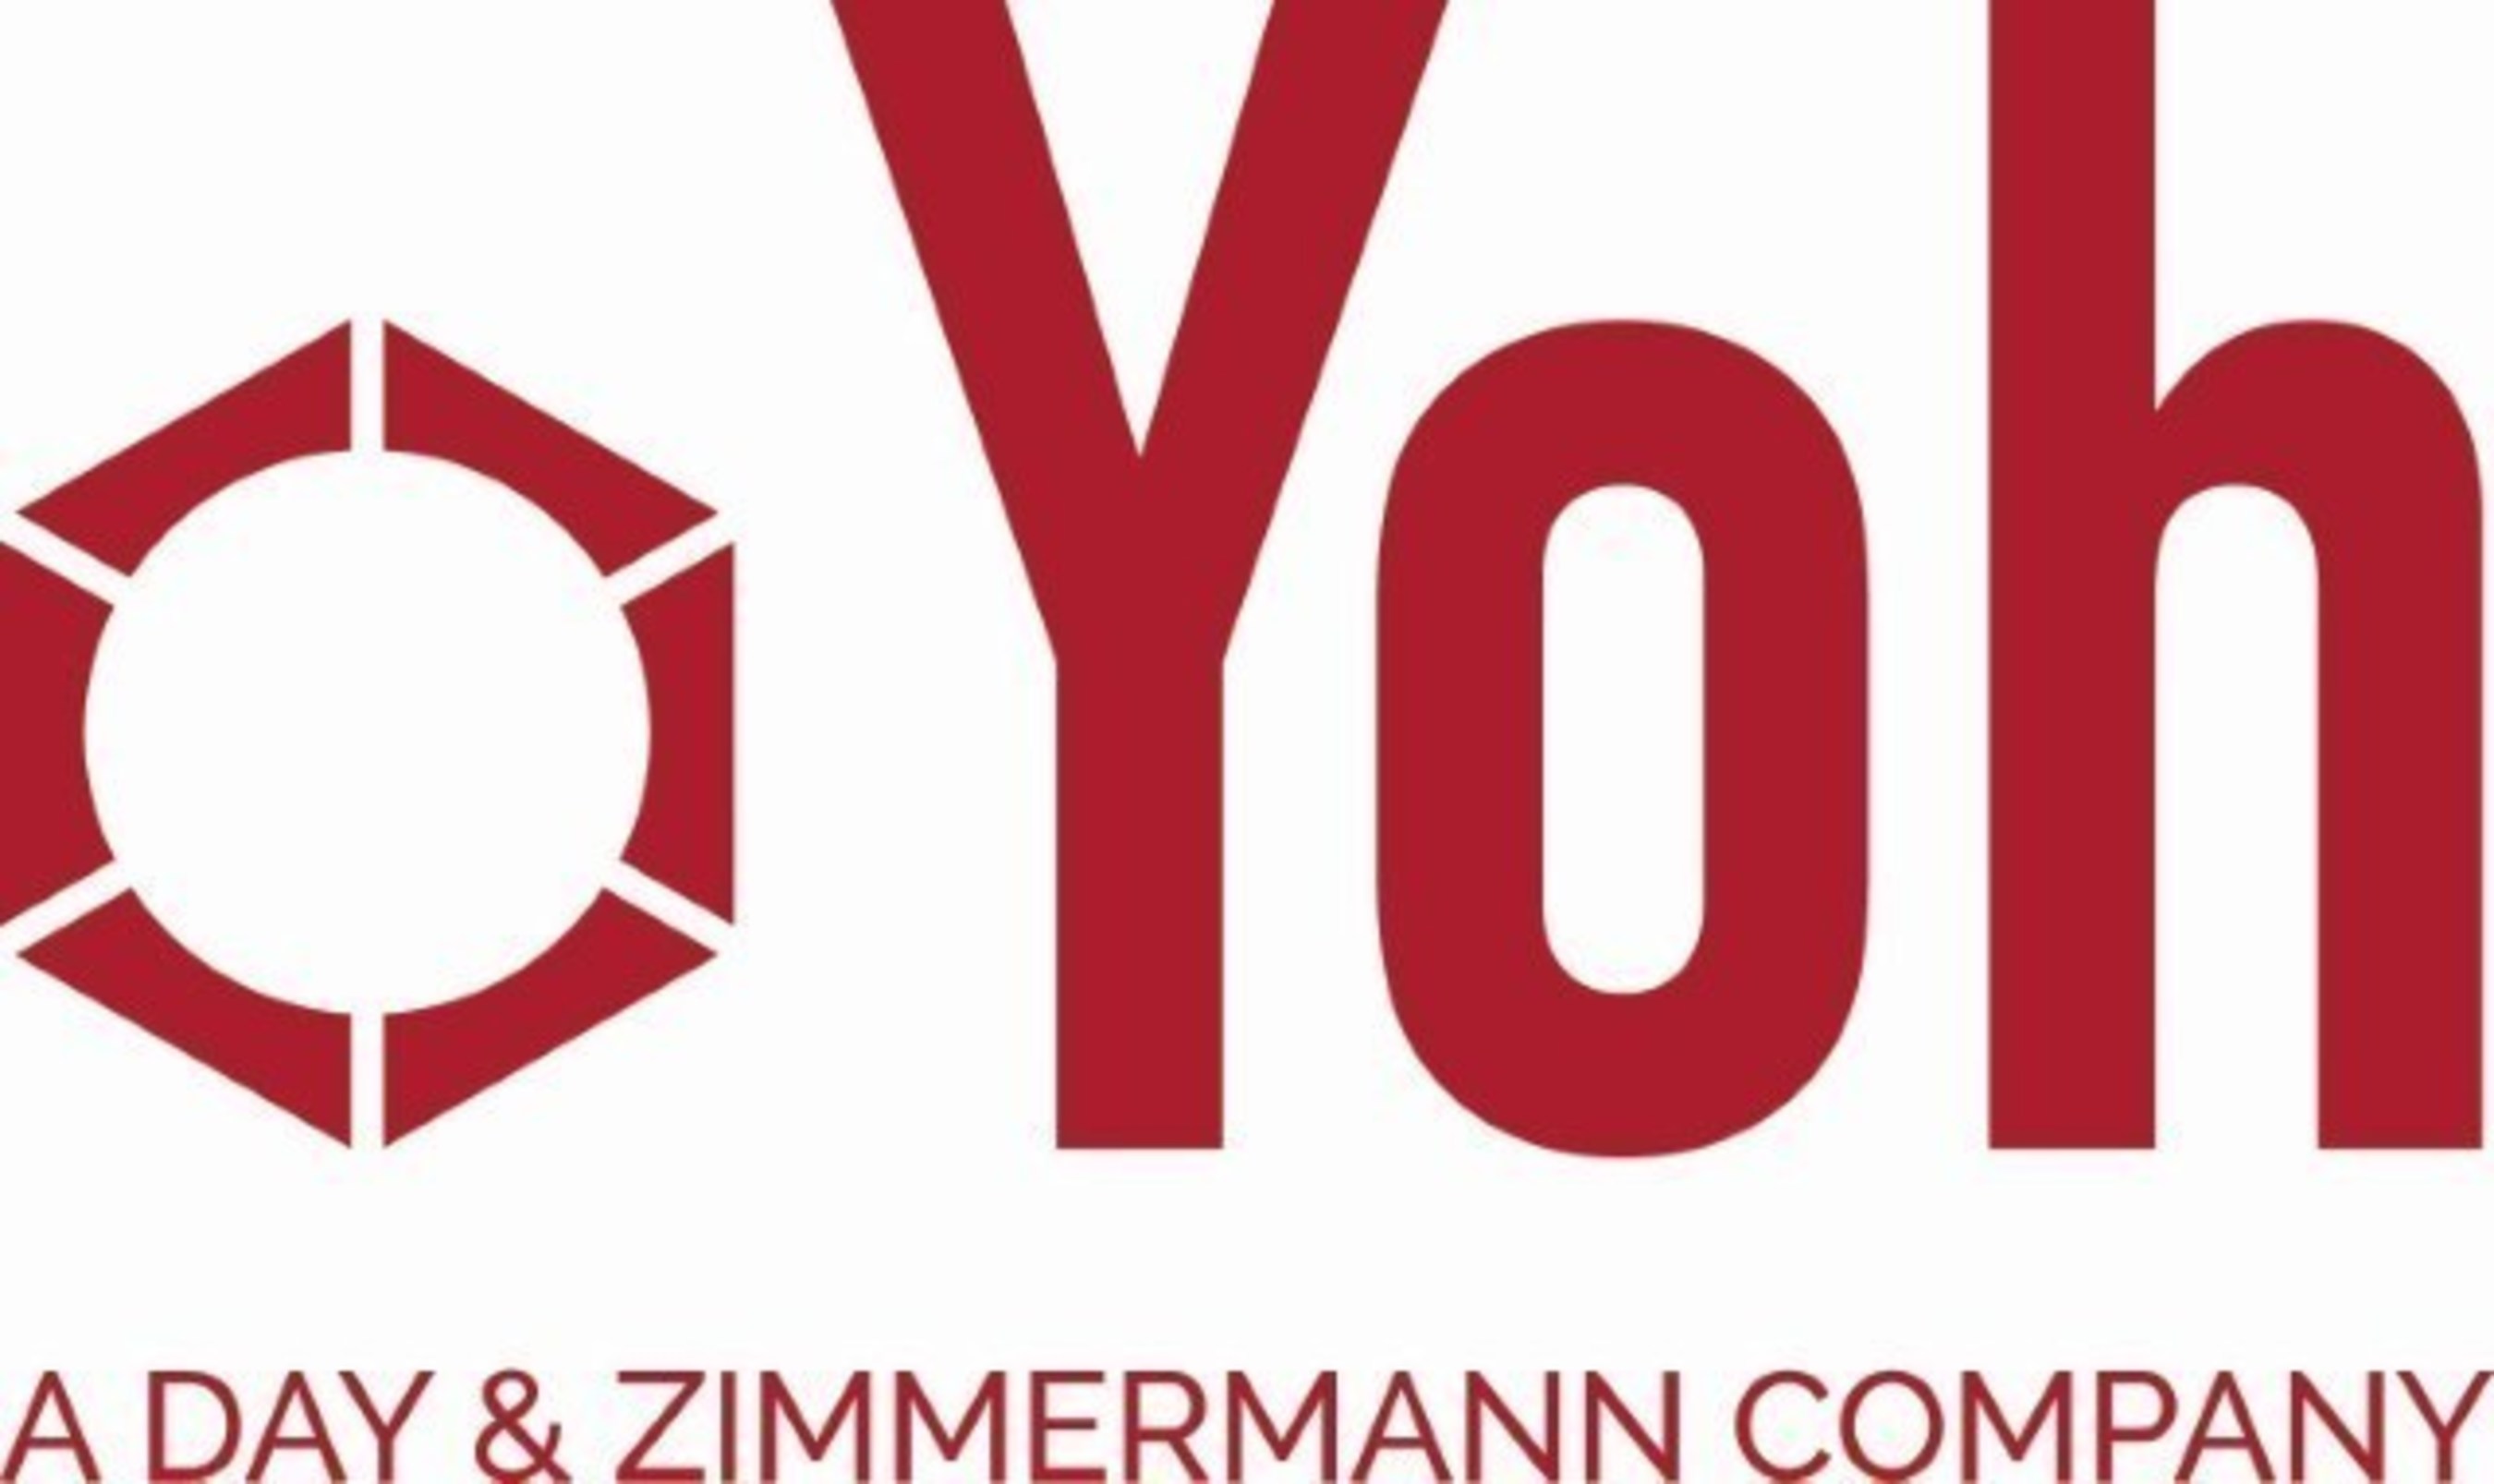 Yoh logo